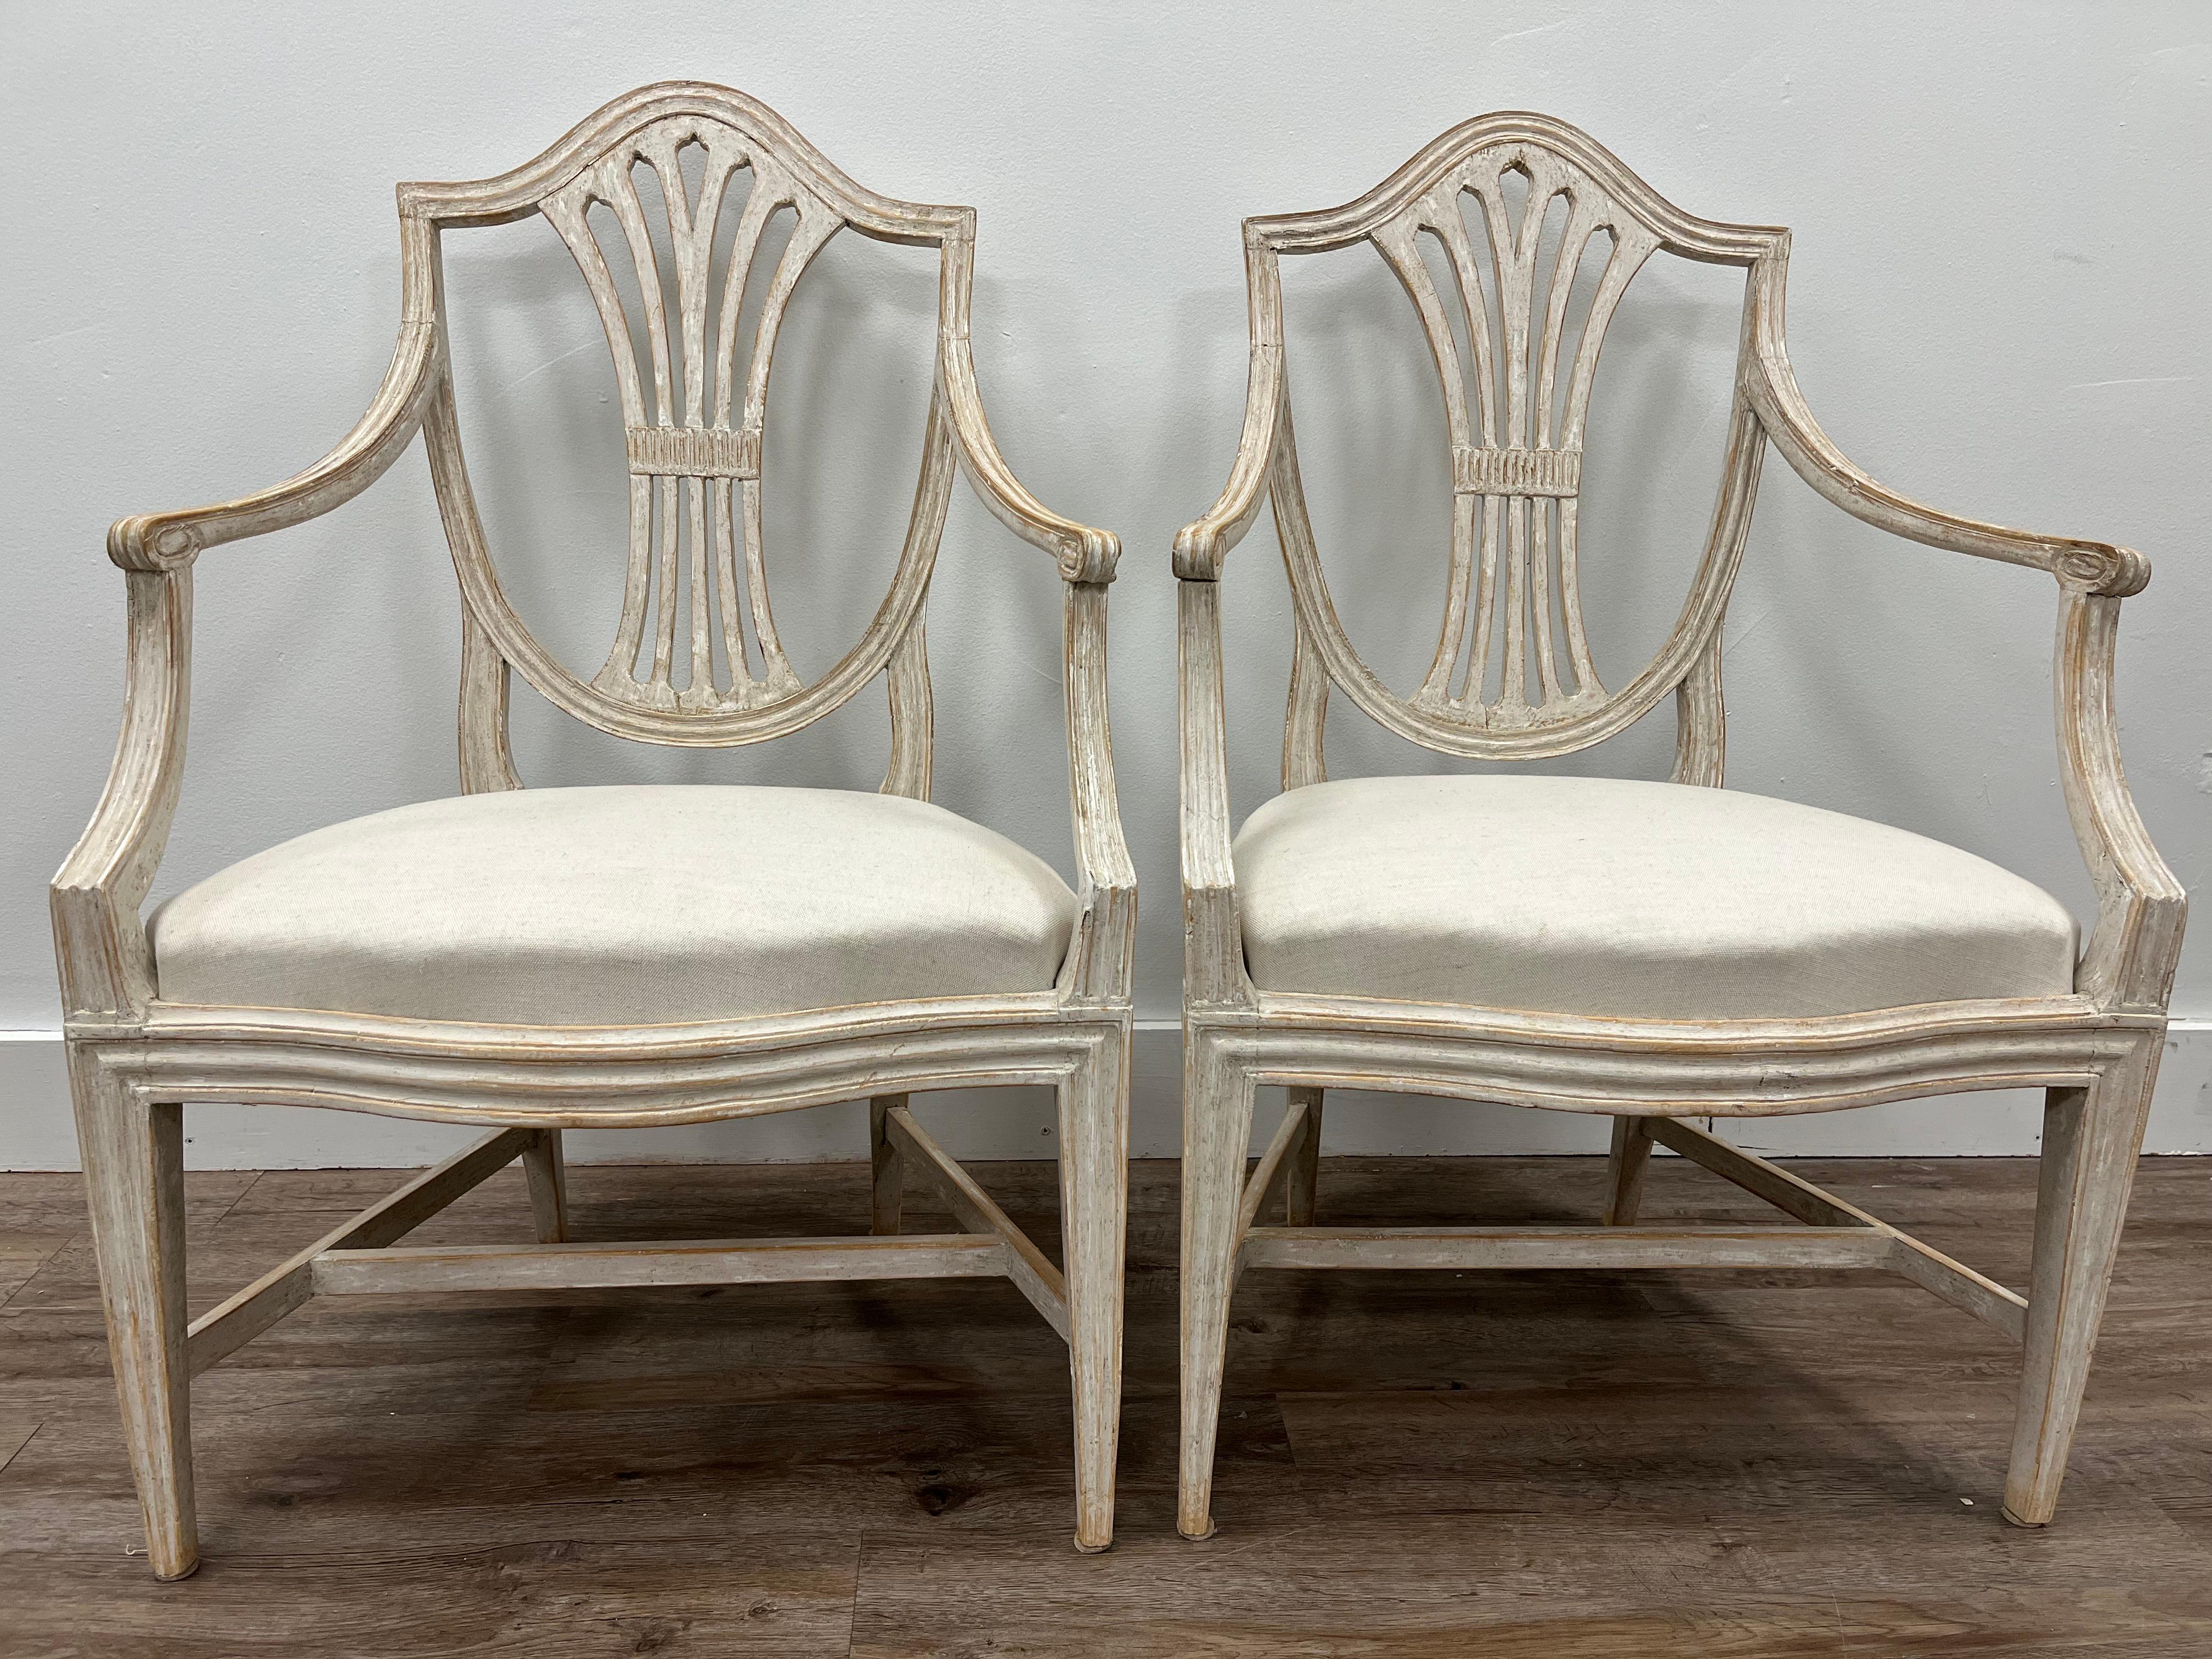 Une superbe paire de fauteuils gustaviens fabriqués à Stockholm et signés par Johan Erik Höglander (1758-1813). Dossier arqué avec sièges avant en arc de cercle. Châssis - dossier, accoudoirs et base avec des contours détaillés. L'une des chaises a